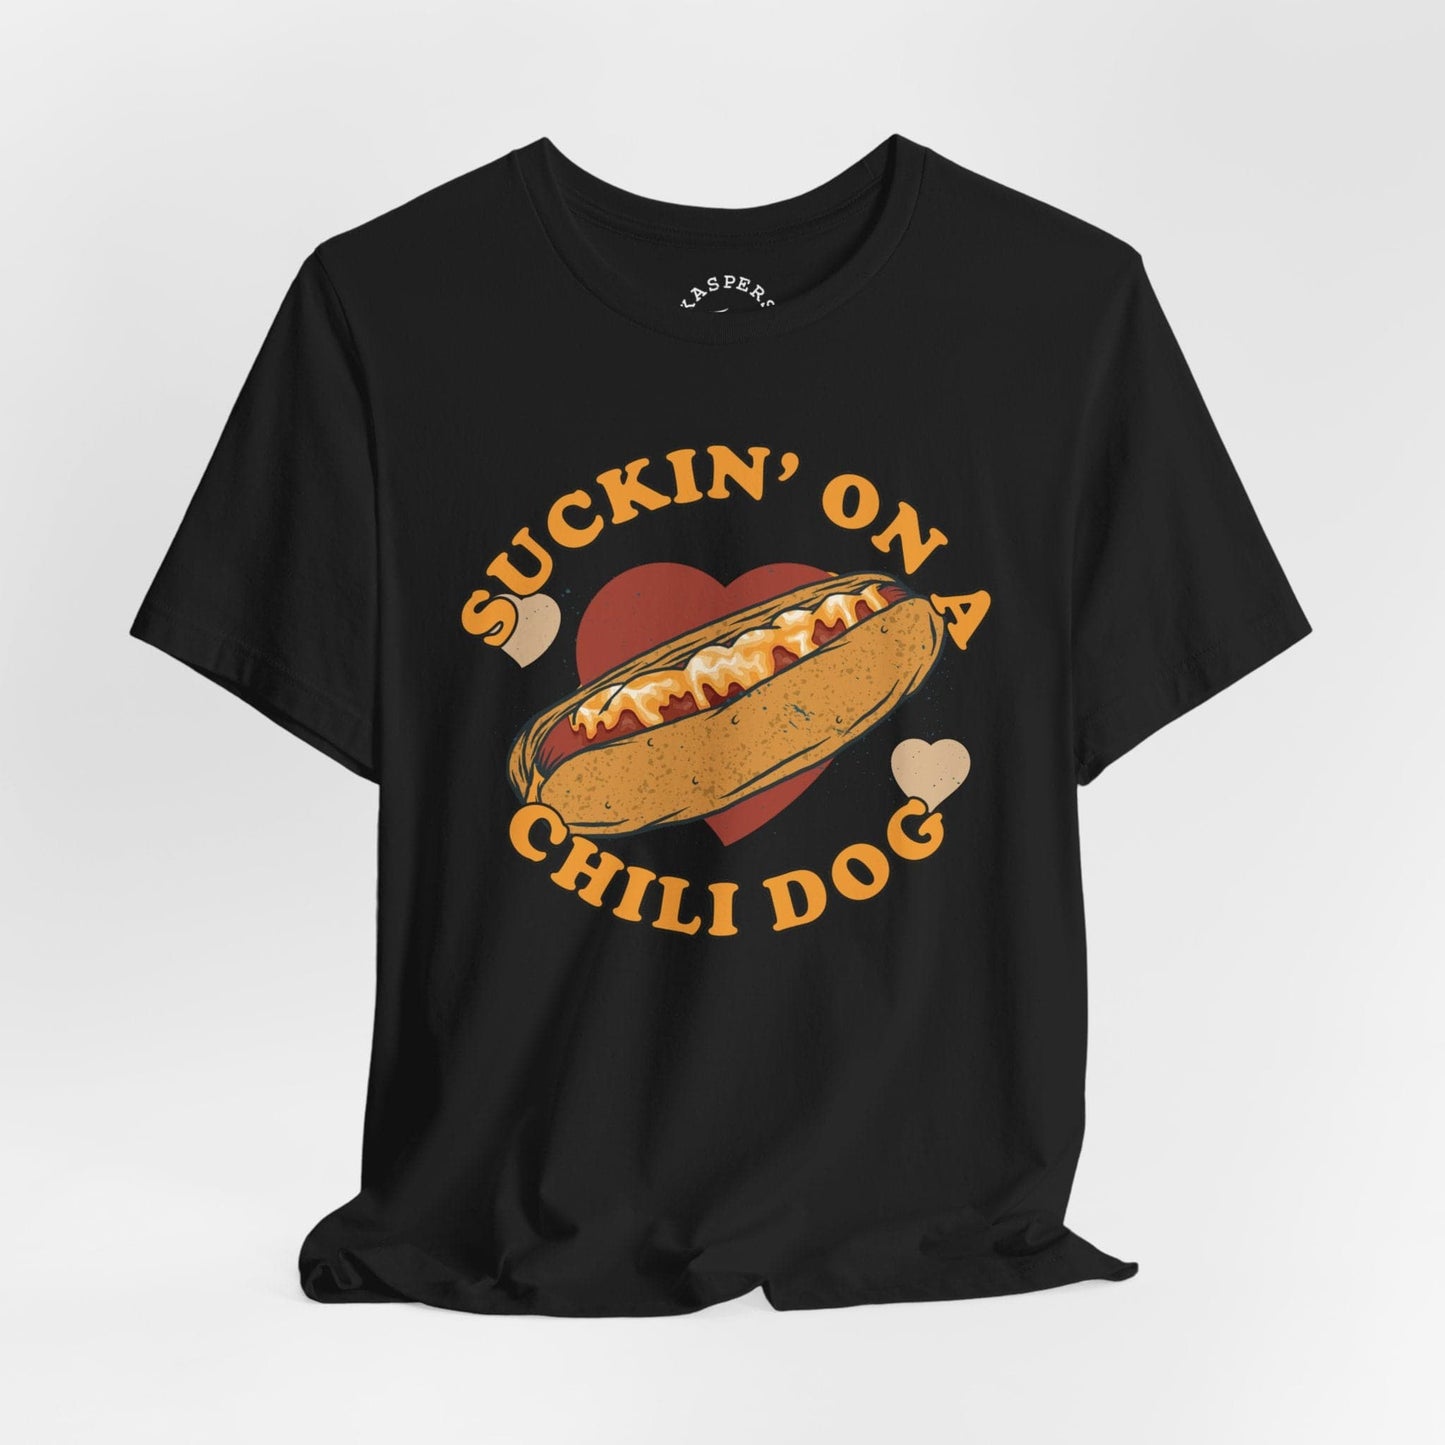 Suckin' On A Chili Dog T-Shirt